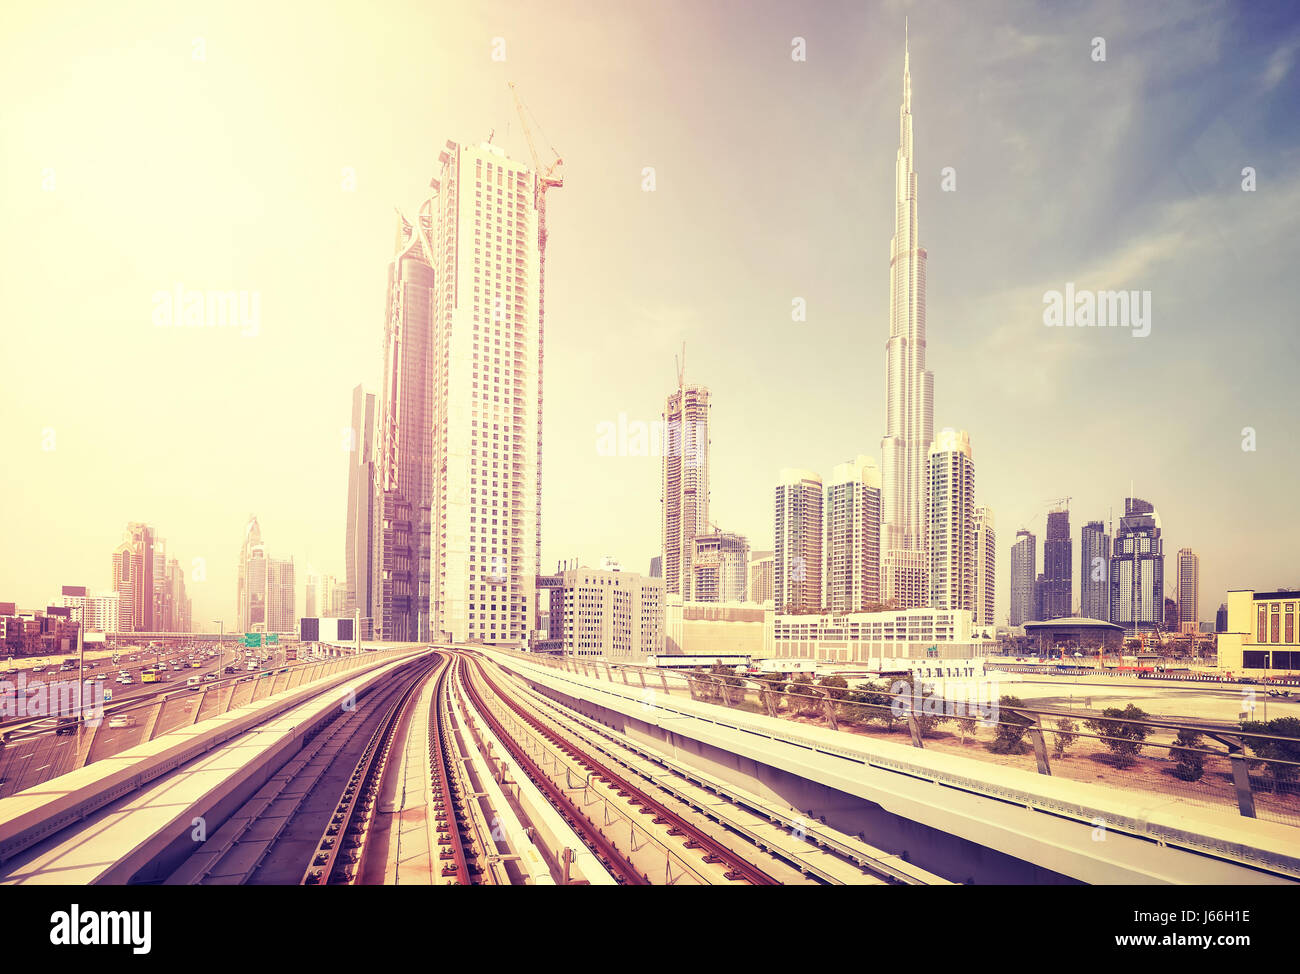 Le centre-ville moderne de Dubaï vu de train, métro appliqués colorés, aux Émirats arabes unis. Banque D'Images